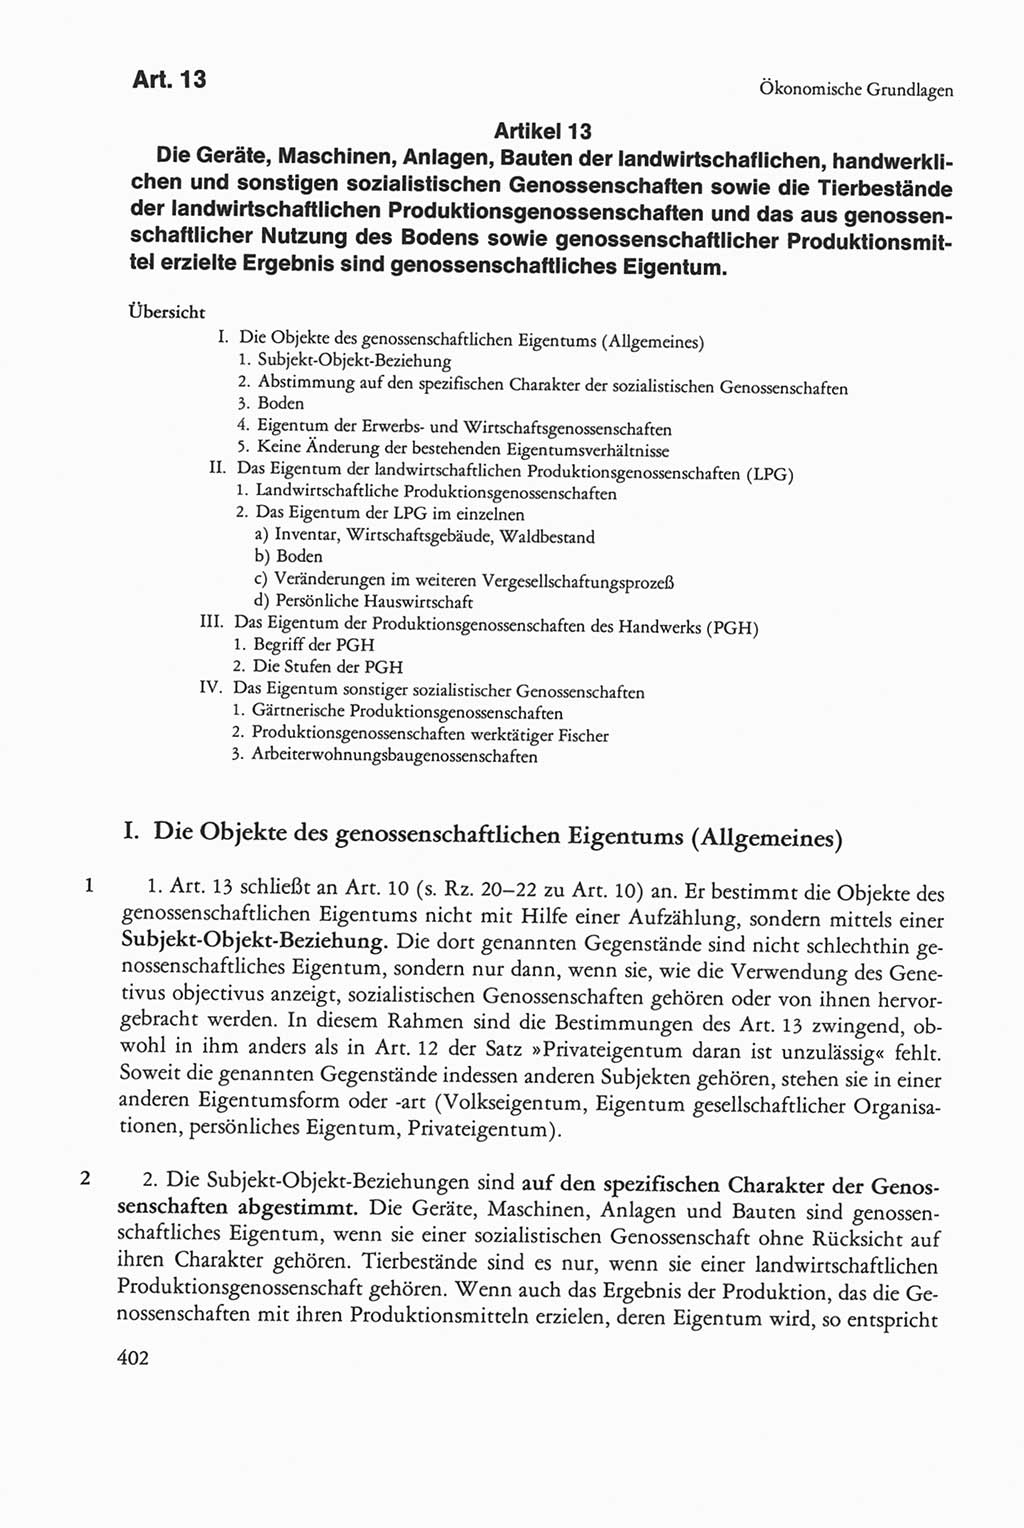 Die sozialistische Verfassung der Deutschen Demokratischen Republik (DDR), Kommentar 1982, Seite 402 (Soz. Verf. DDR Komm. 1982, S. 402)